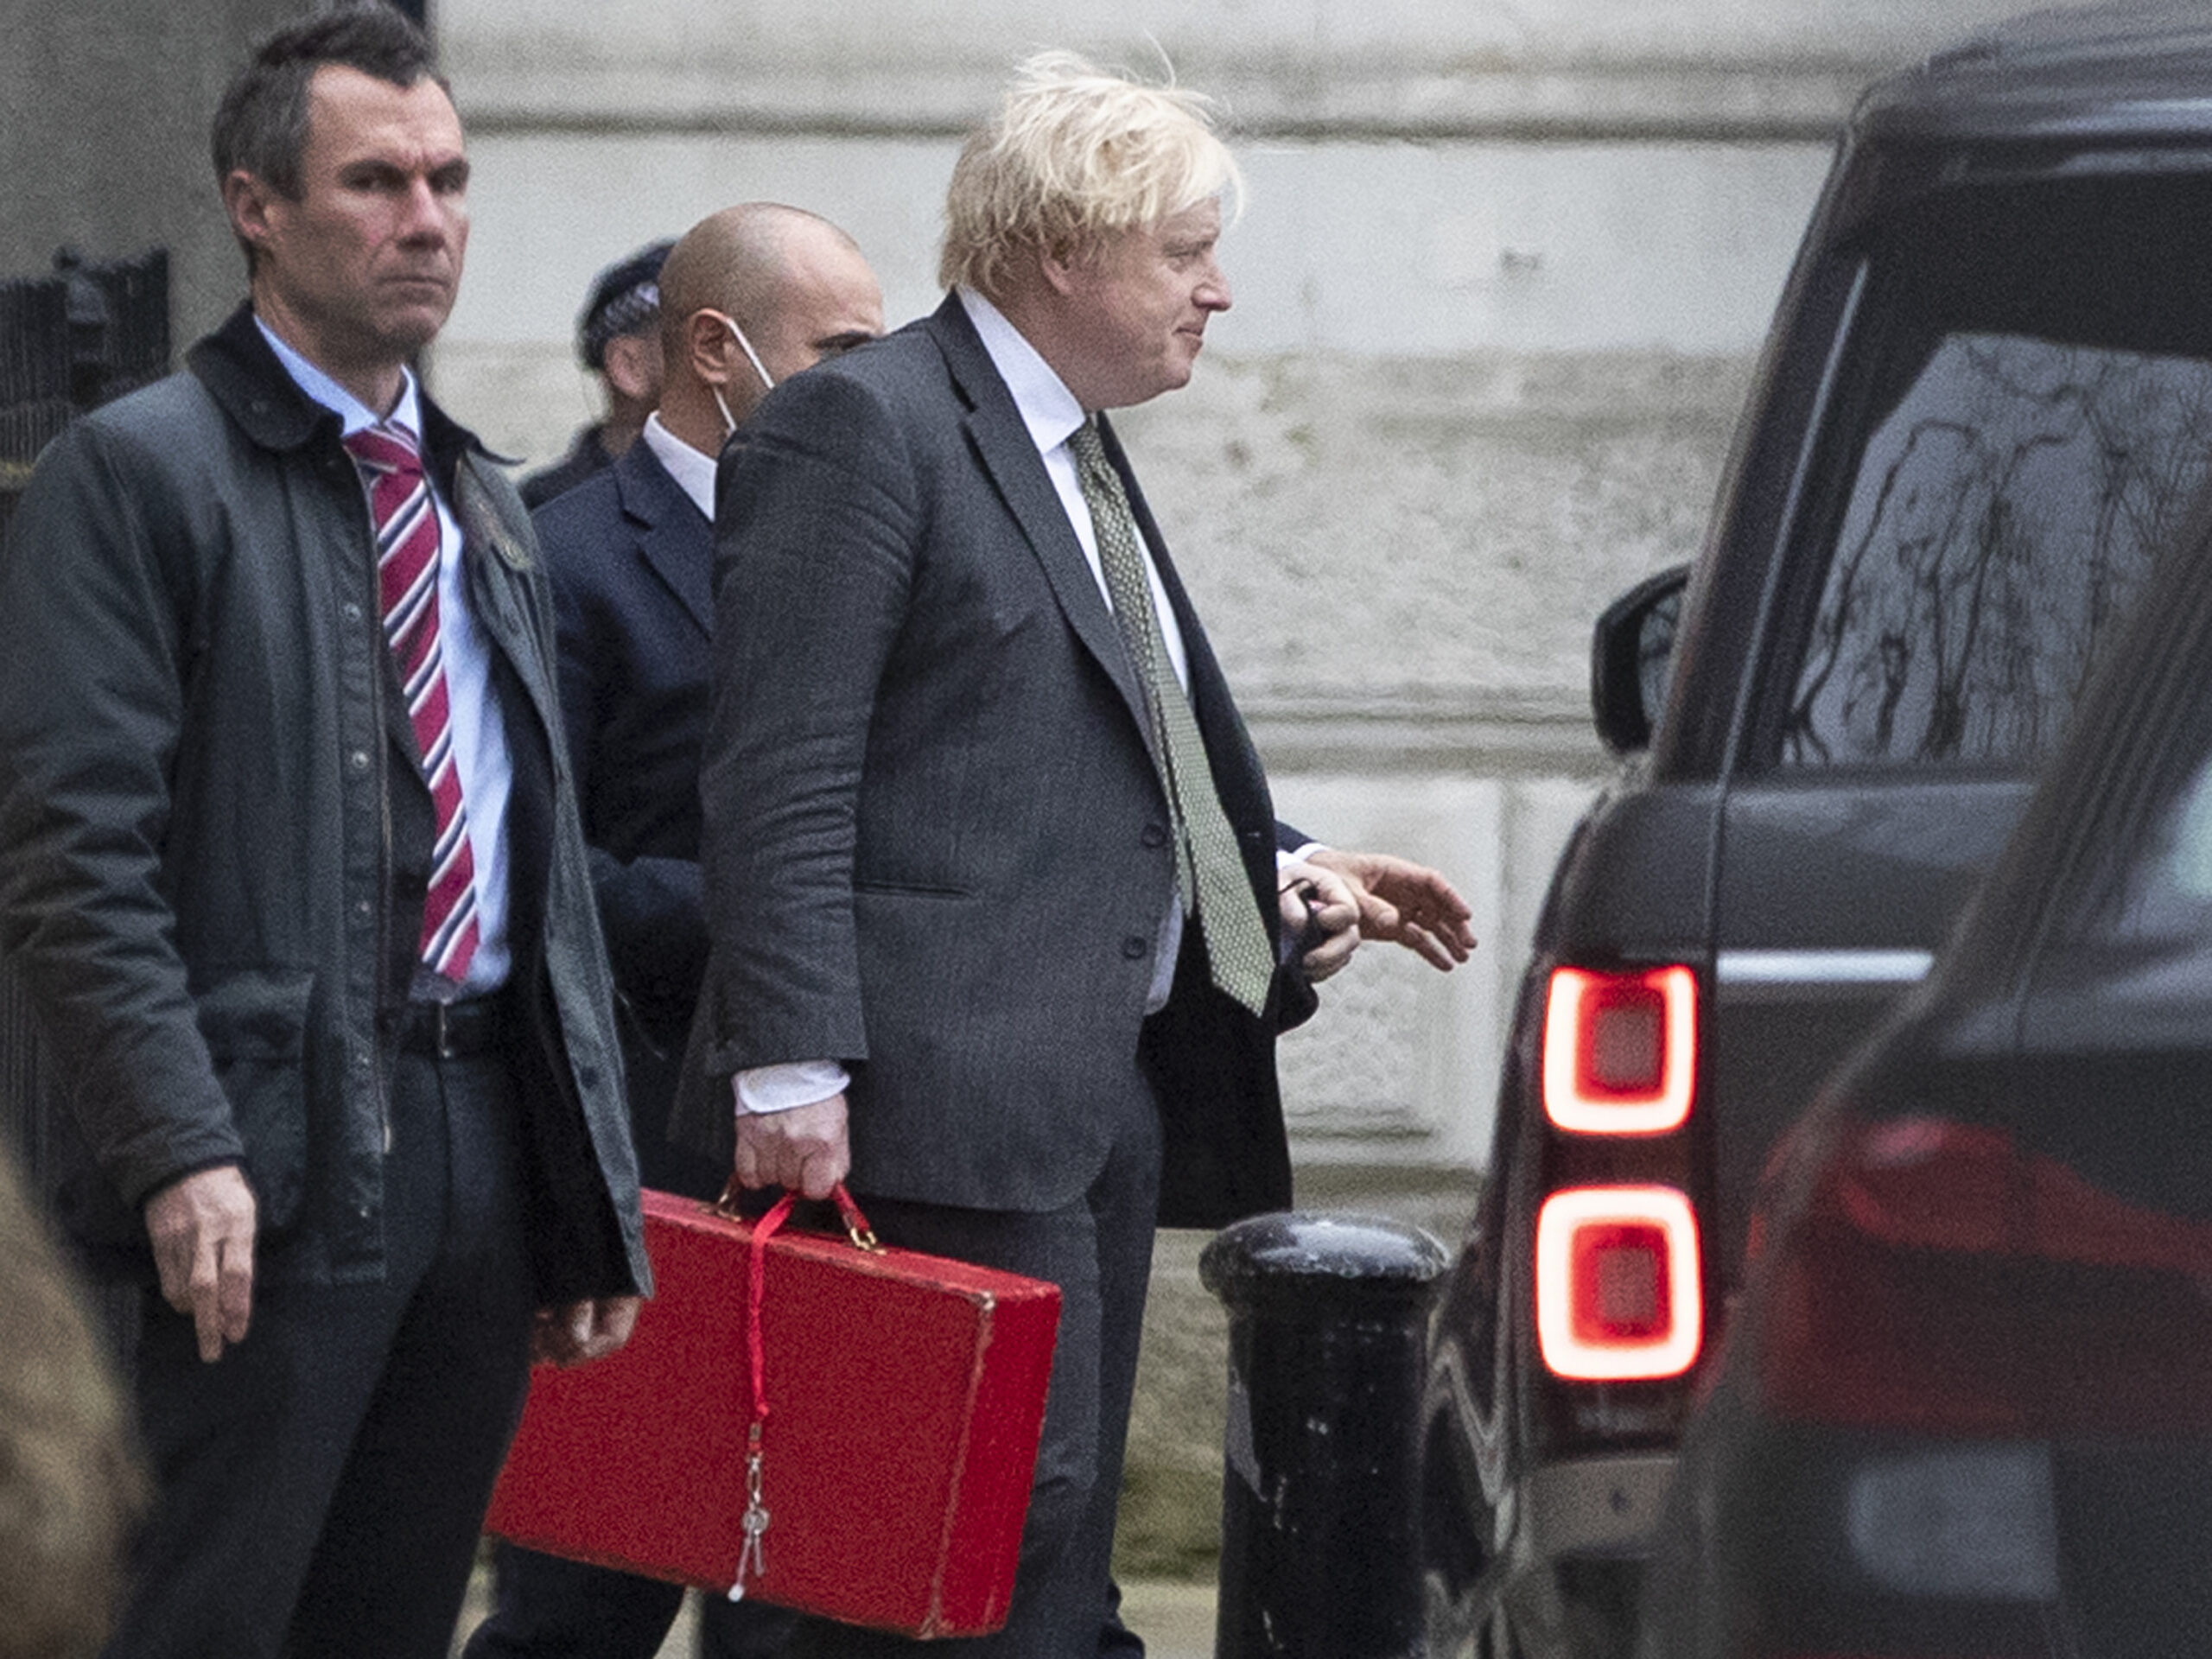 La dimisión de Frost revela la decepción de los euroescépticos con Boris Johnson